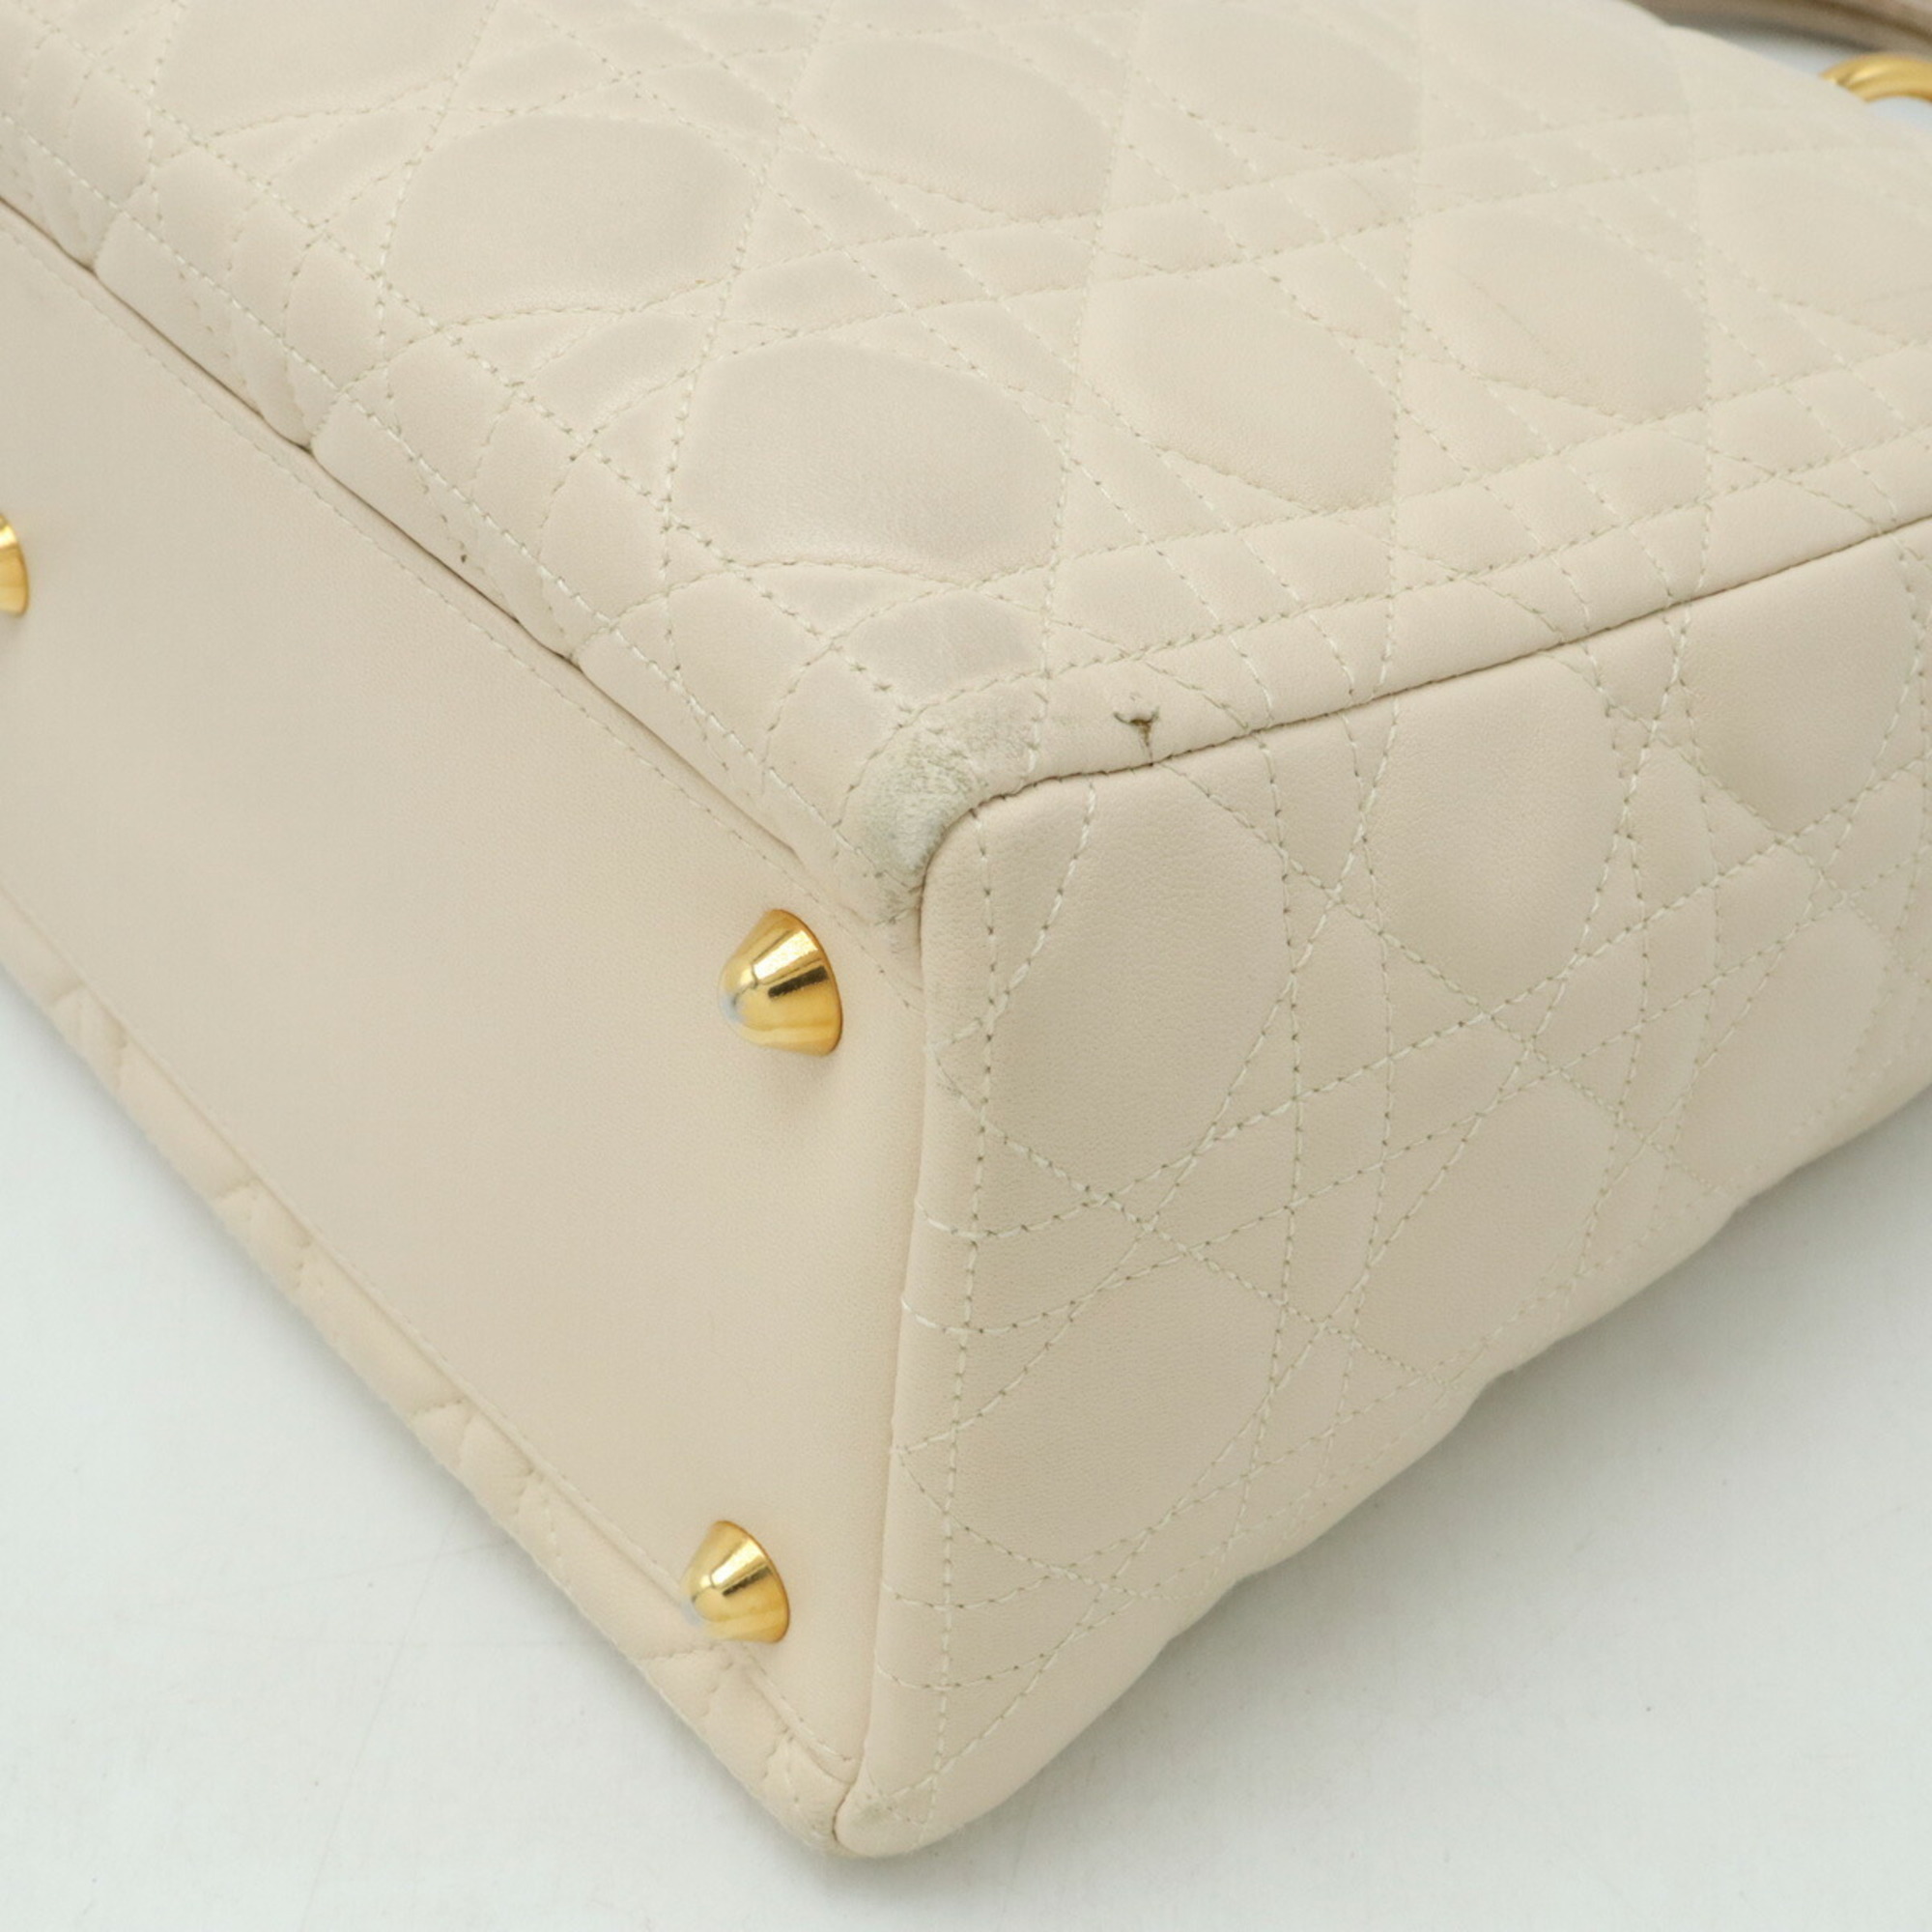 Christian Dior Lady Cannage handbag shoulder bag leather light beige